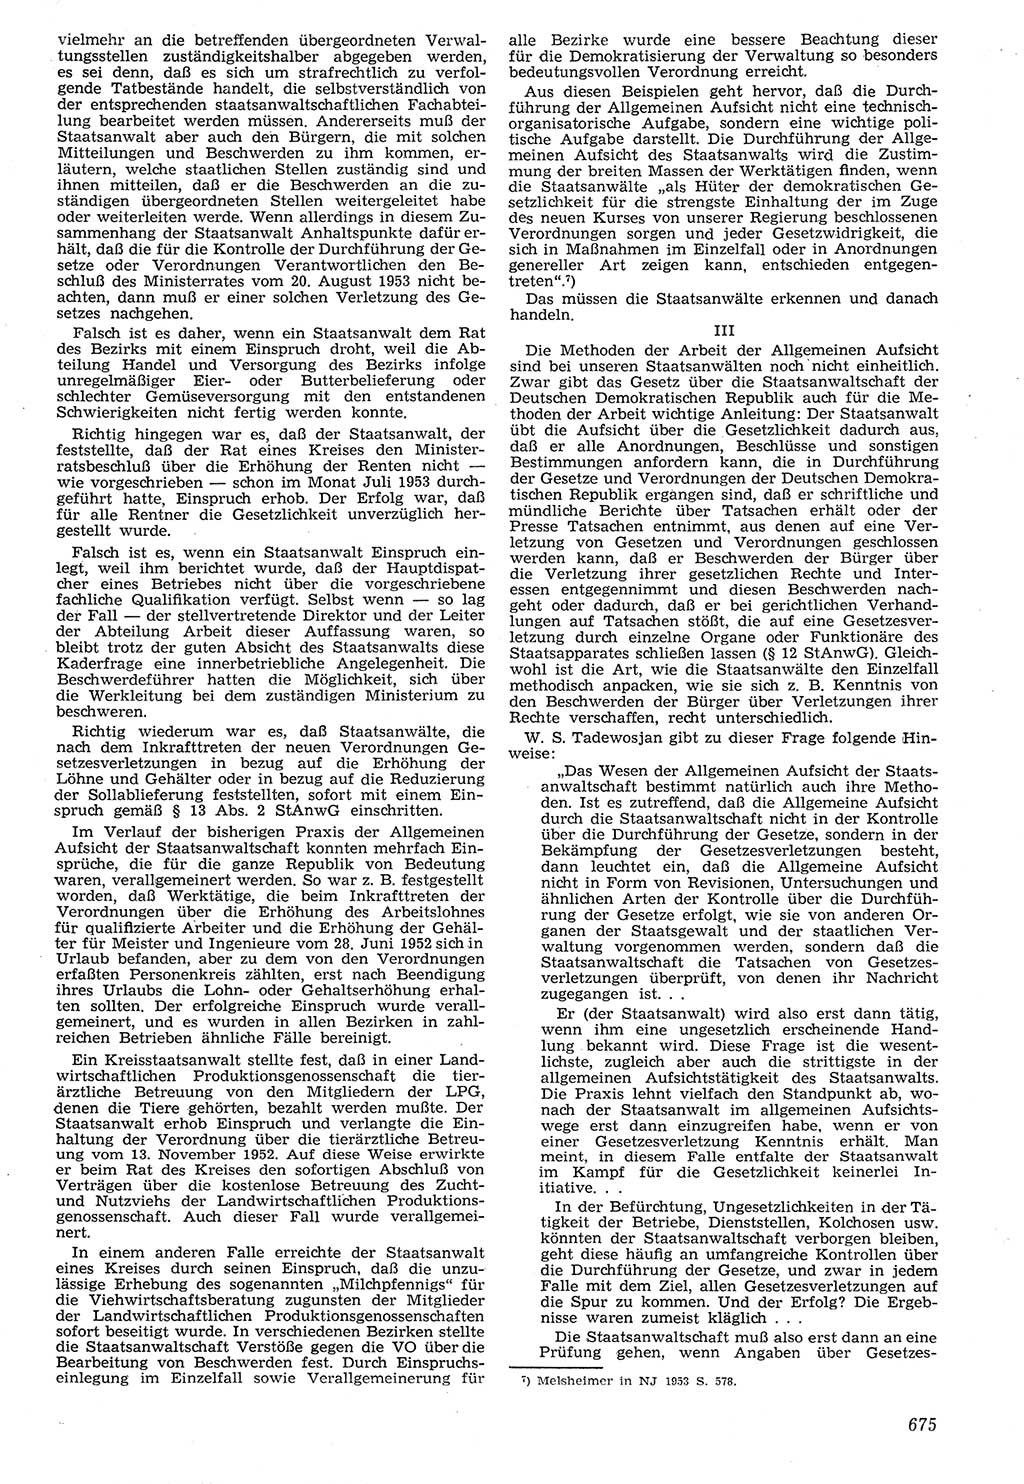 Neue Justiz (NJ), Zeitschrift für Recht und Rechtswissenschaft [Deutsche Demokratische Republik (DDR)], 7. Jahrgang 1953, Seite 675 (NJ DDR 1953, S. 675)